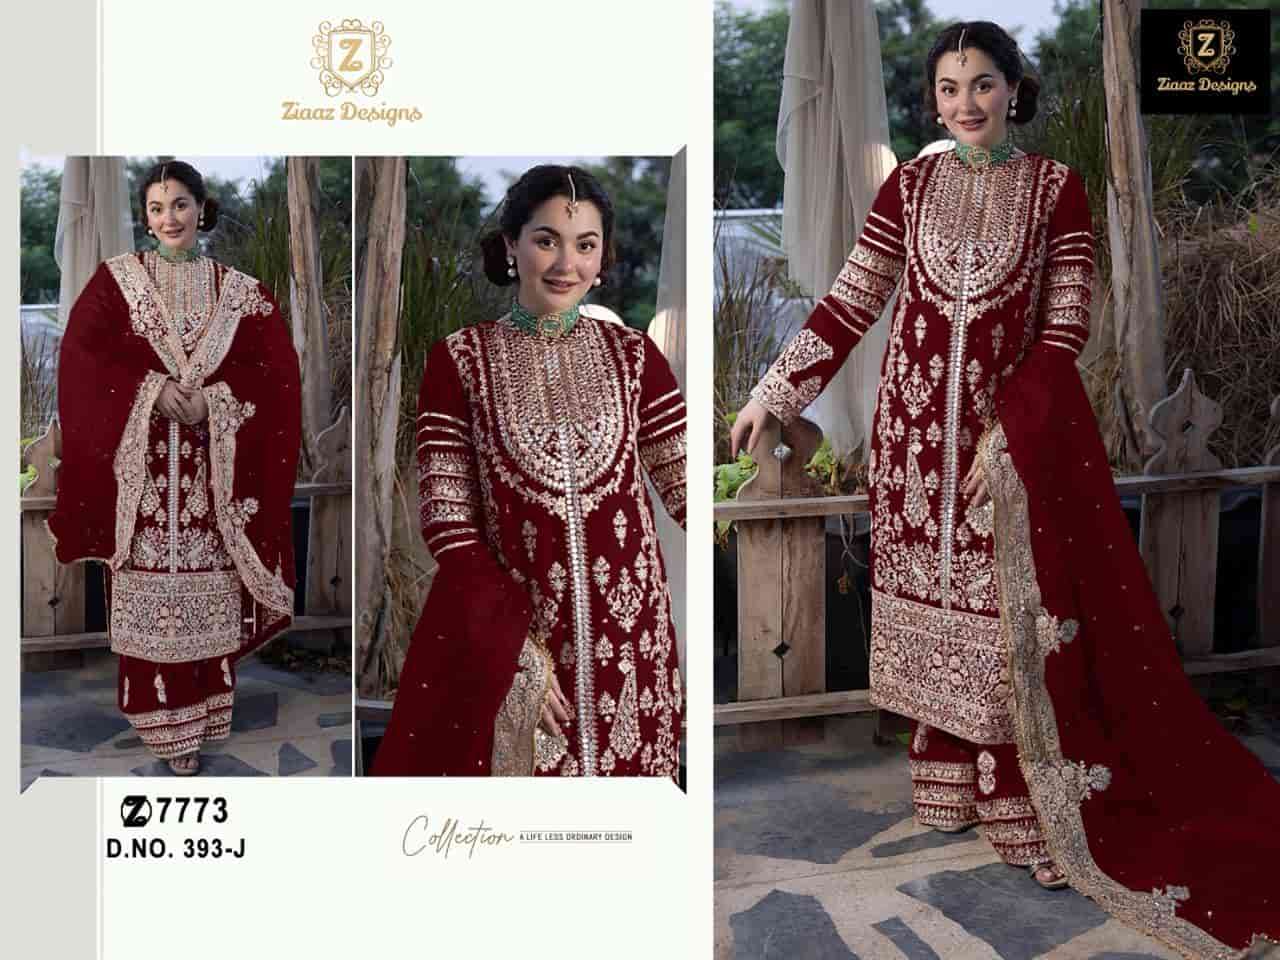 Ziaaz Designs 393 J Festive Wear Style Latest Heavy Designer Dress Online Dealers